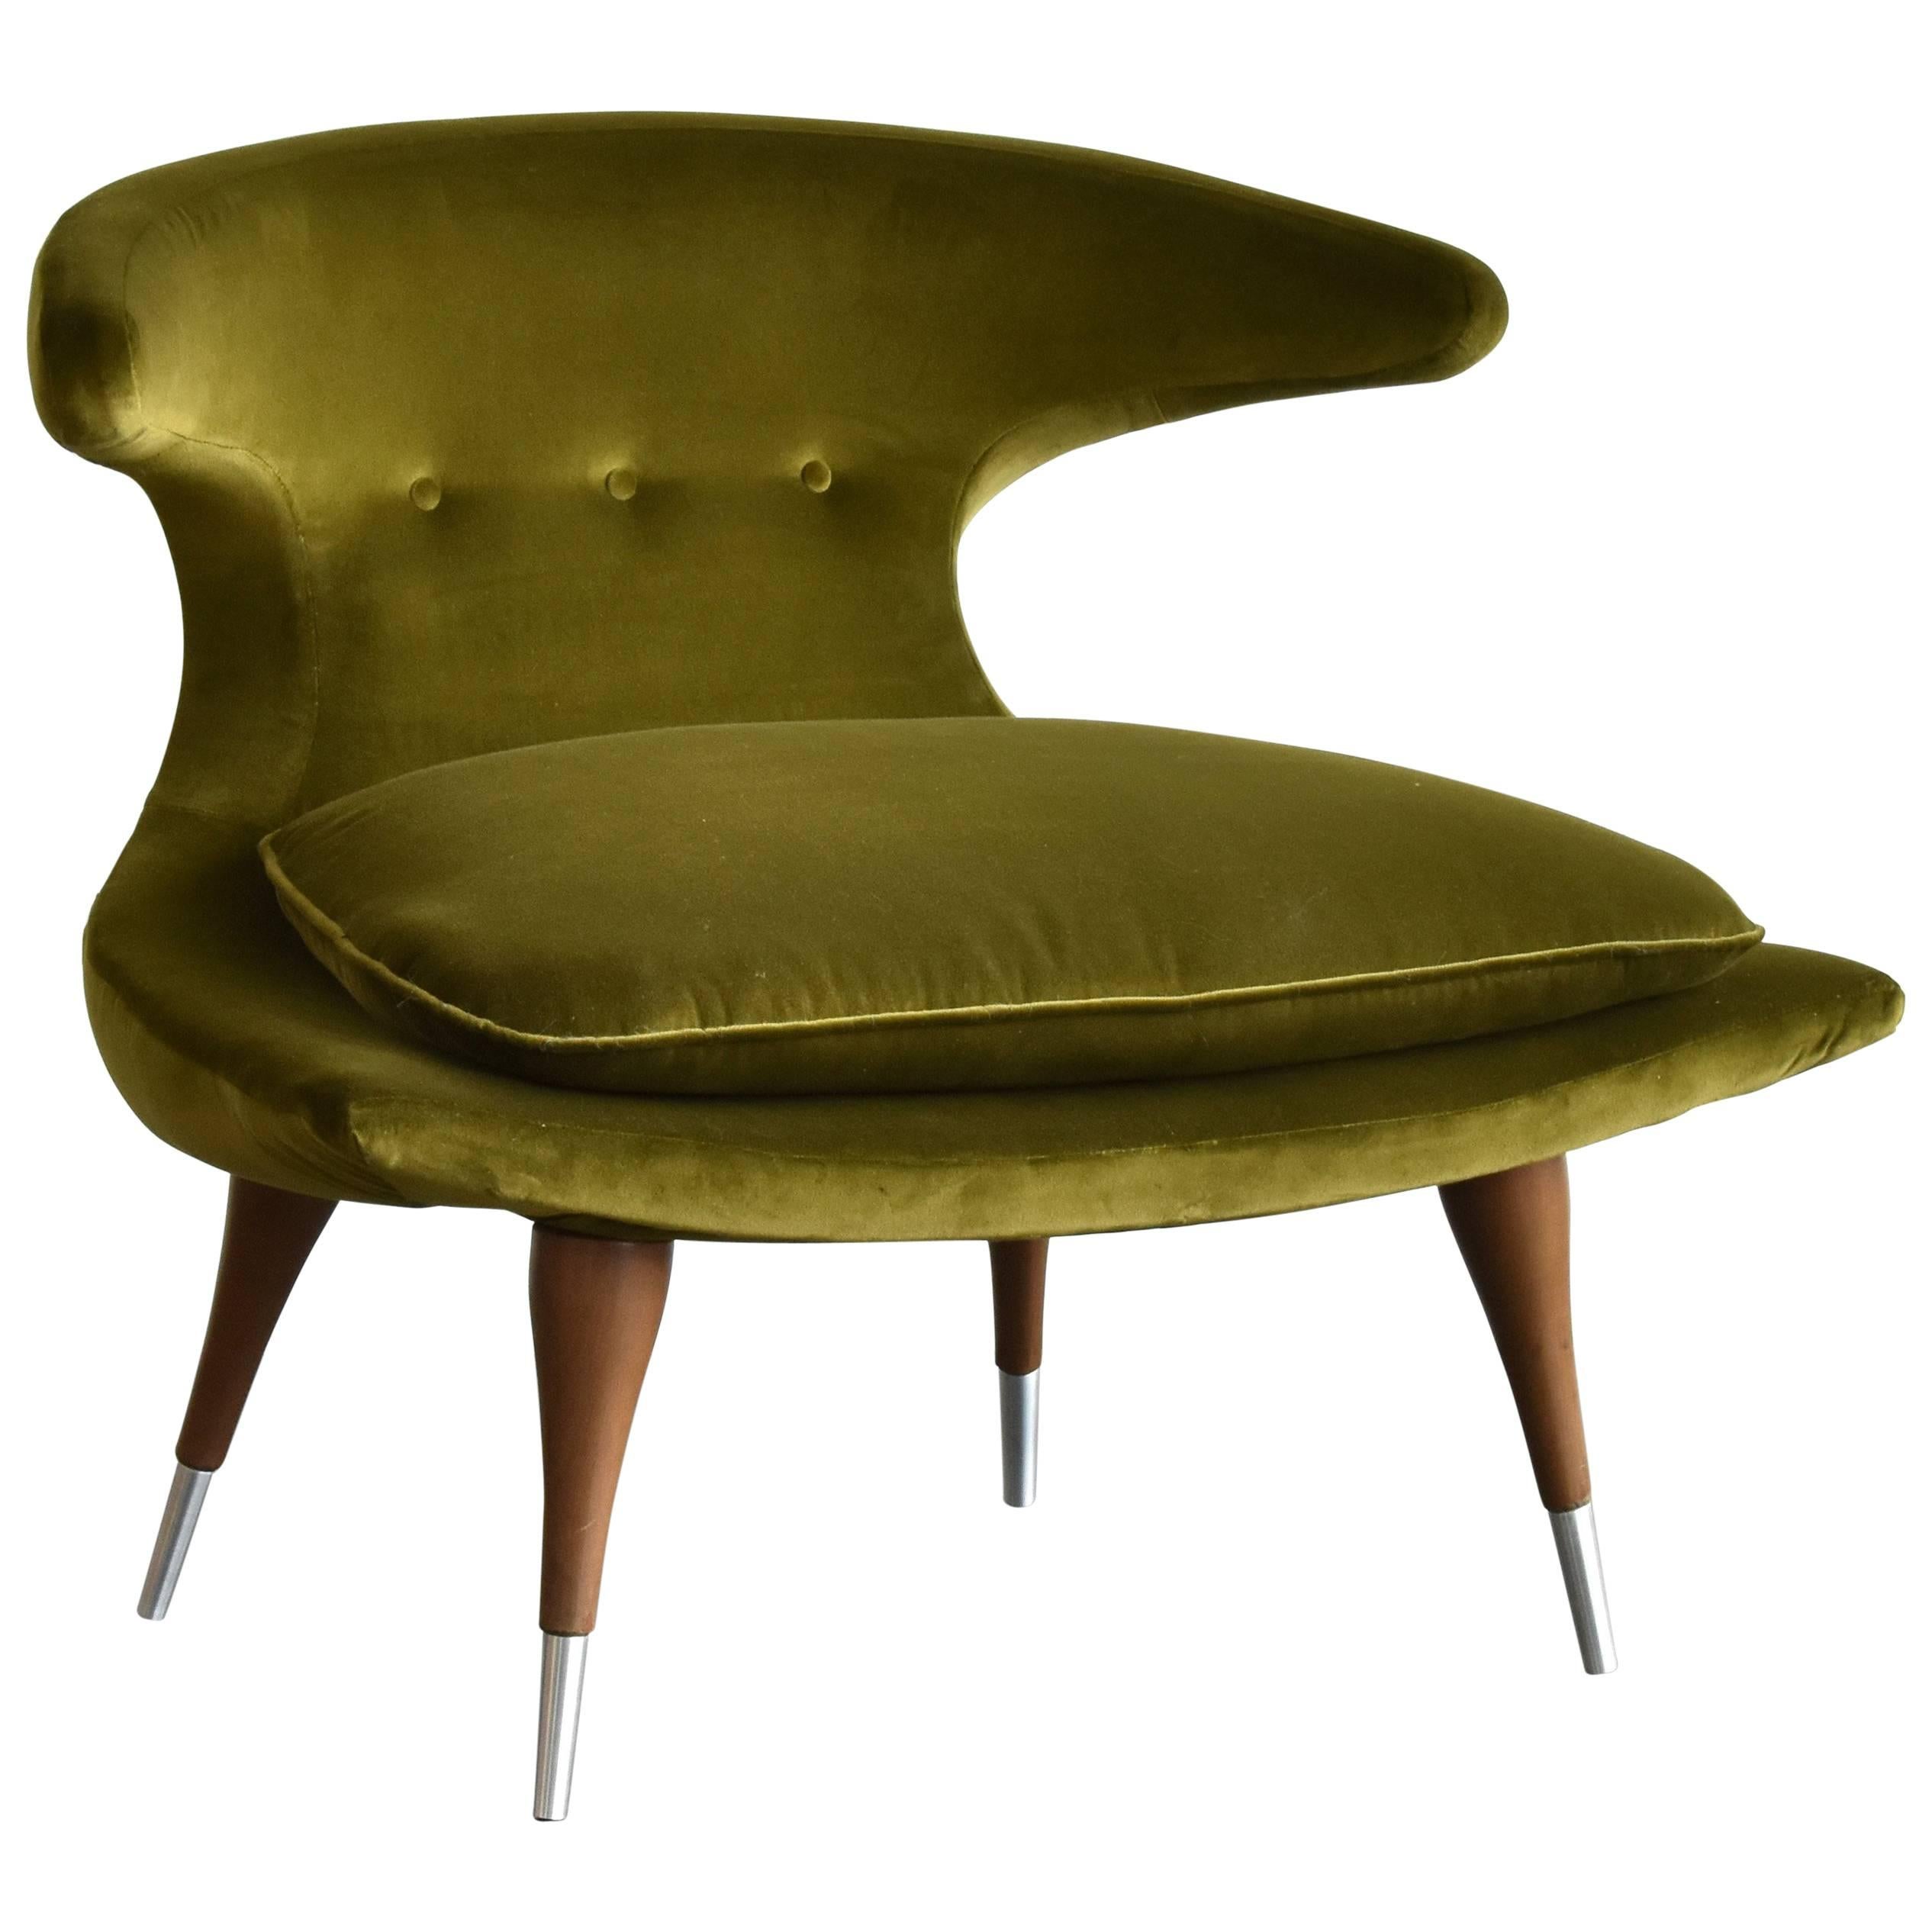 Karpen of California "Horn" Lounge Chair Green Velvet, Walnut, Aluminum, 1950s